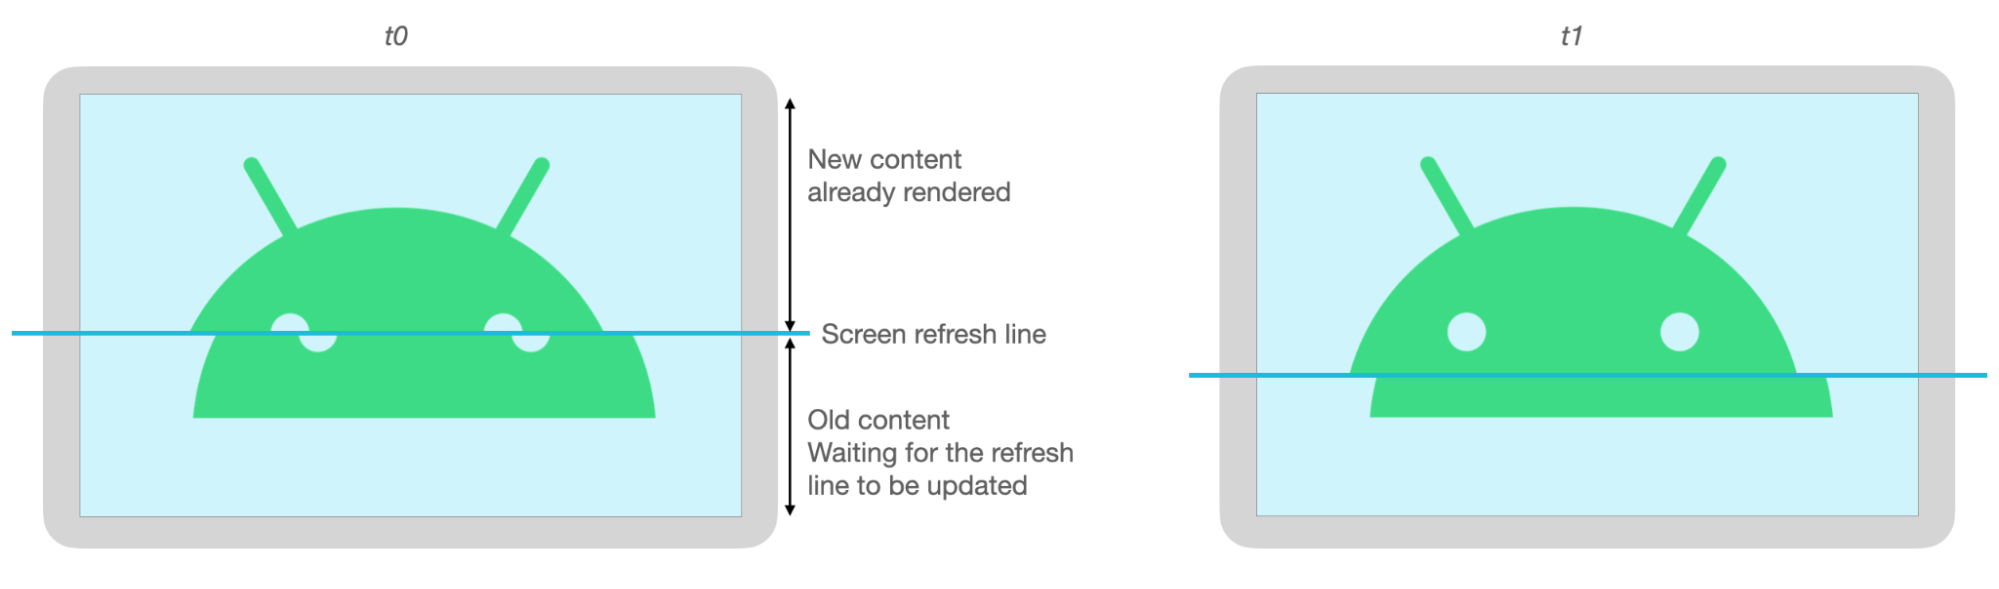 Bagian atas dan bawah gambar Android tidak sejajar karena adanya tearing saat layar dimuat ulang.